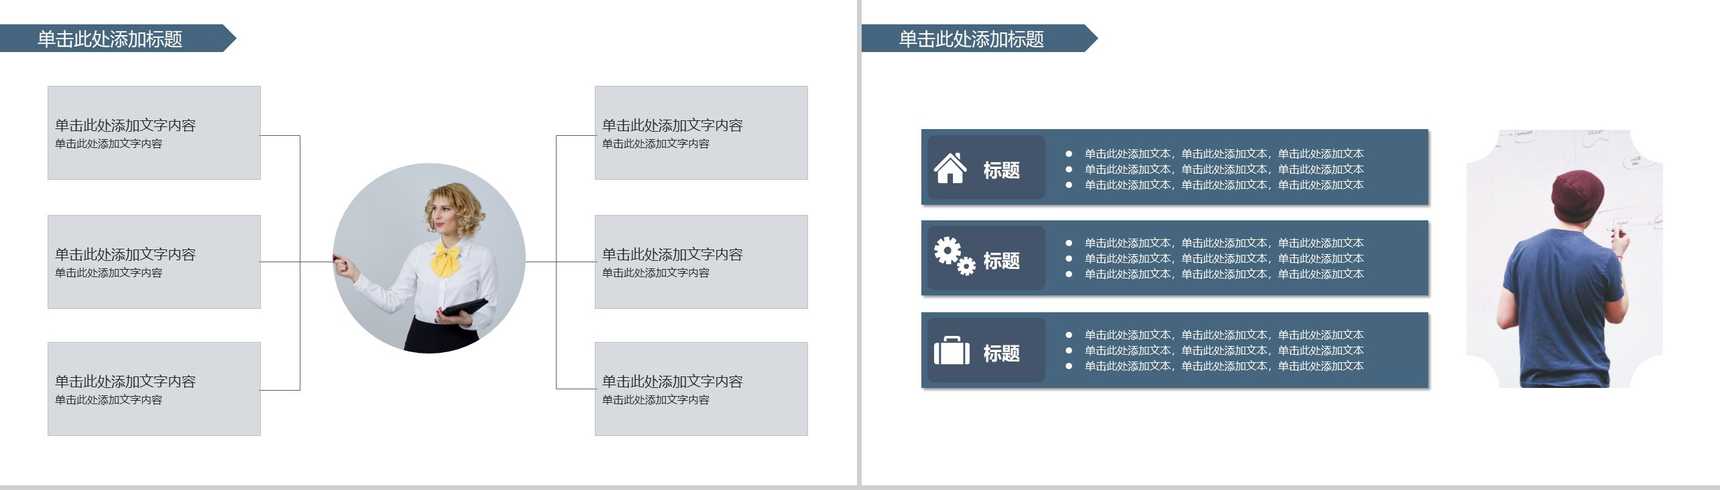 简约商务都市风格企业简介产品介绍PPT模板-7